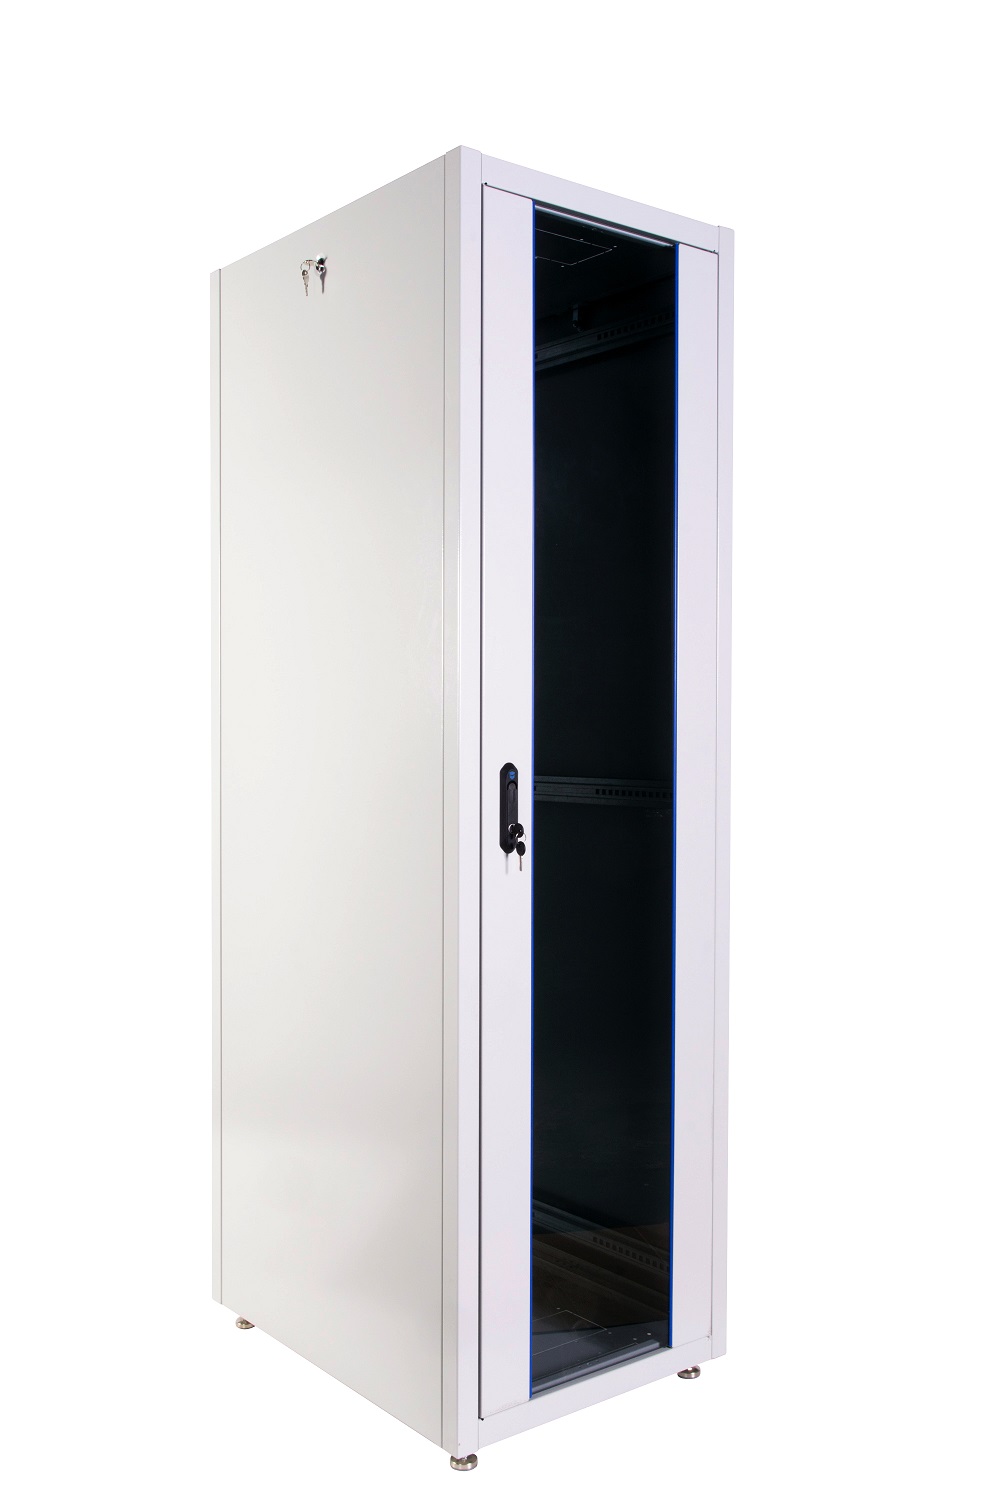  Купить Шкаф телекоммуникационный напольный ЭКОНОМ 48U (800 × 800) дверь стекло, дверь металл